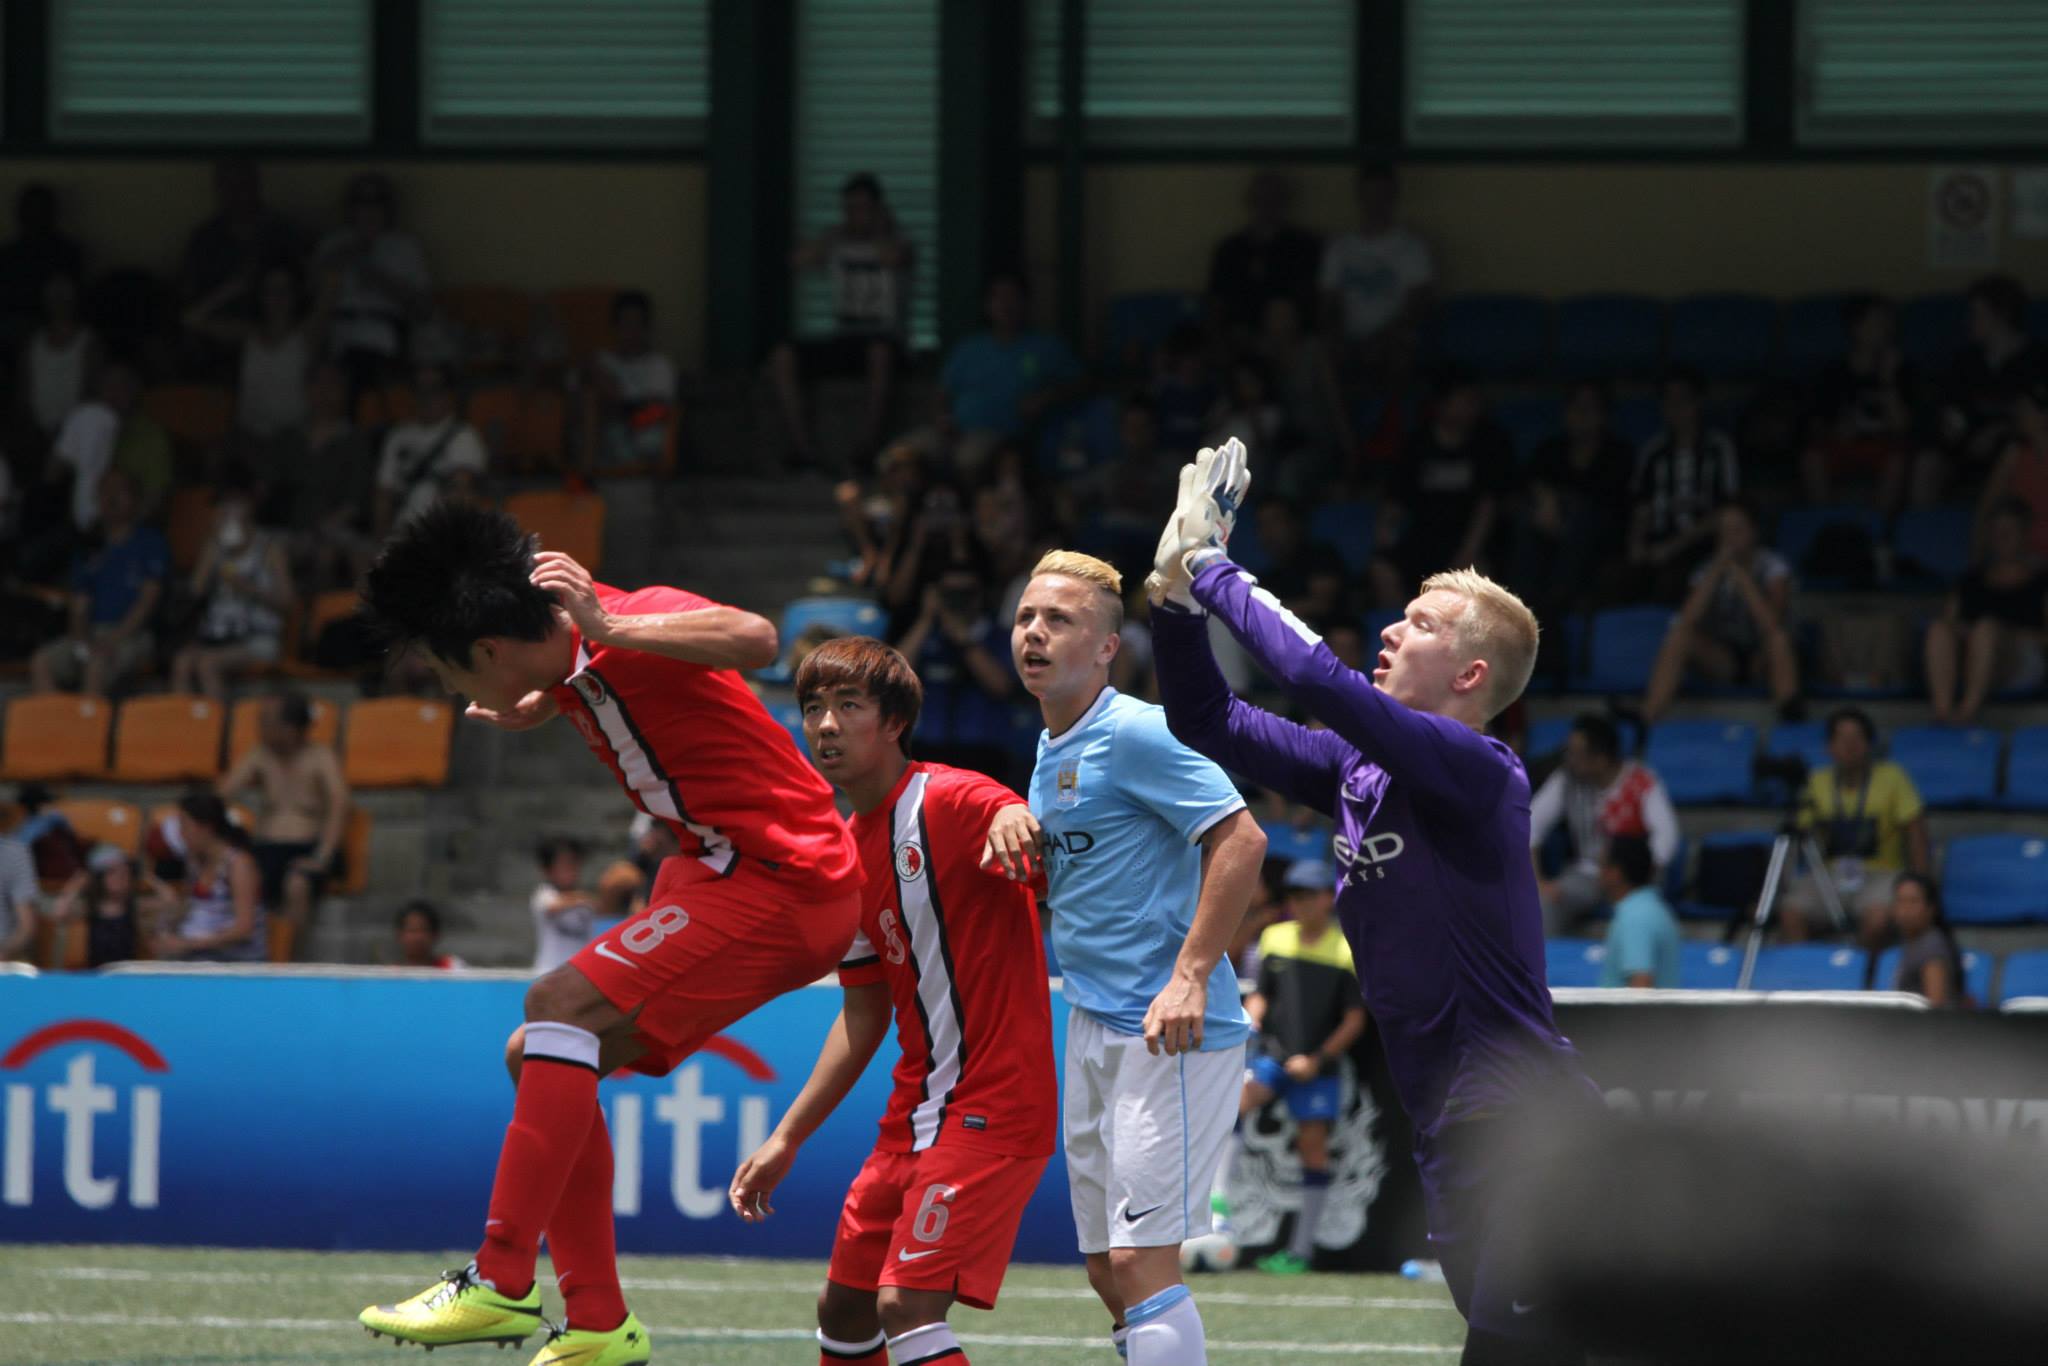 Hong Kong Soccer Sevens Photo Highlights - 2014.